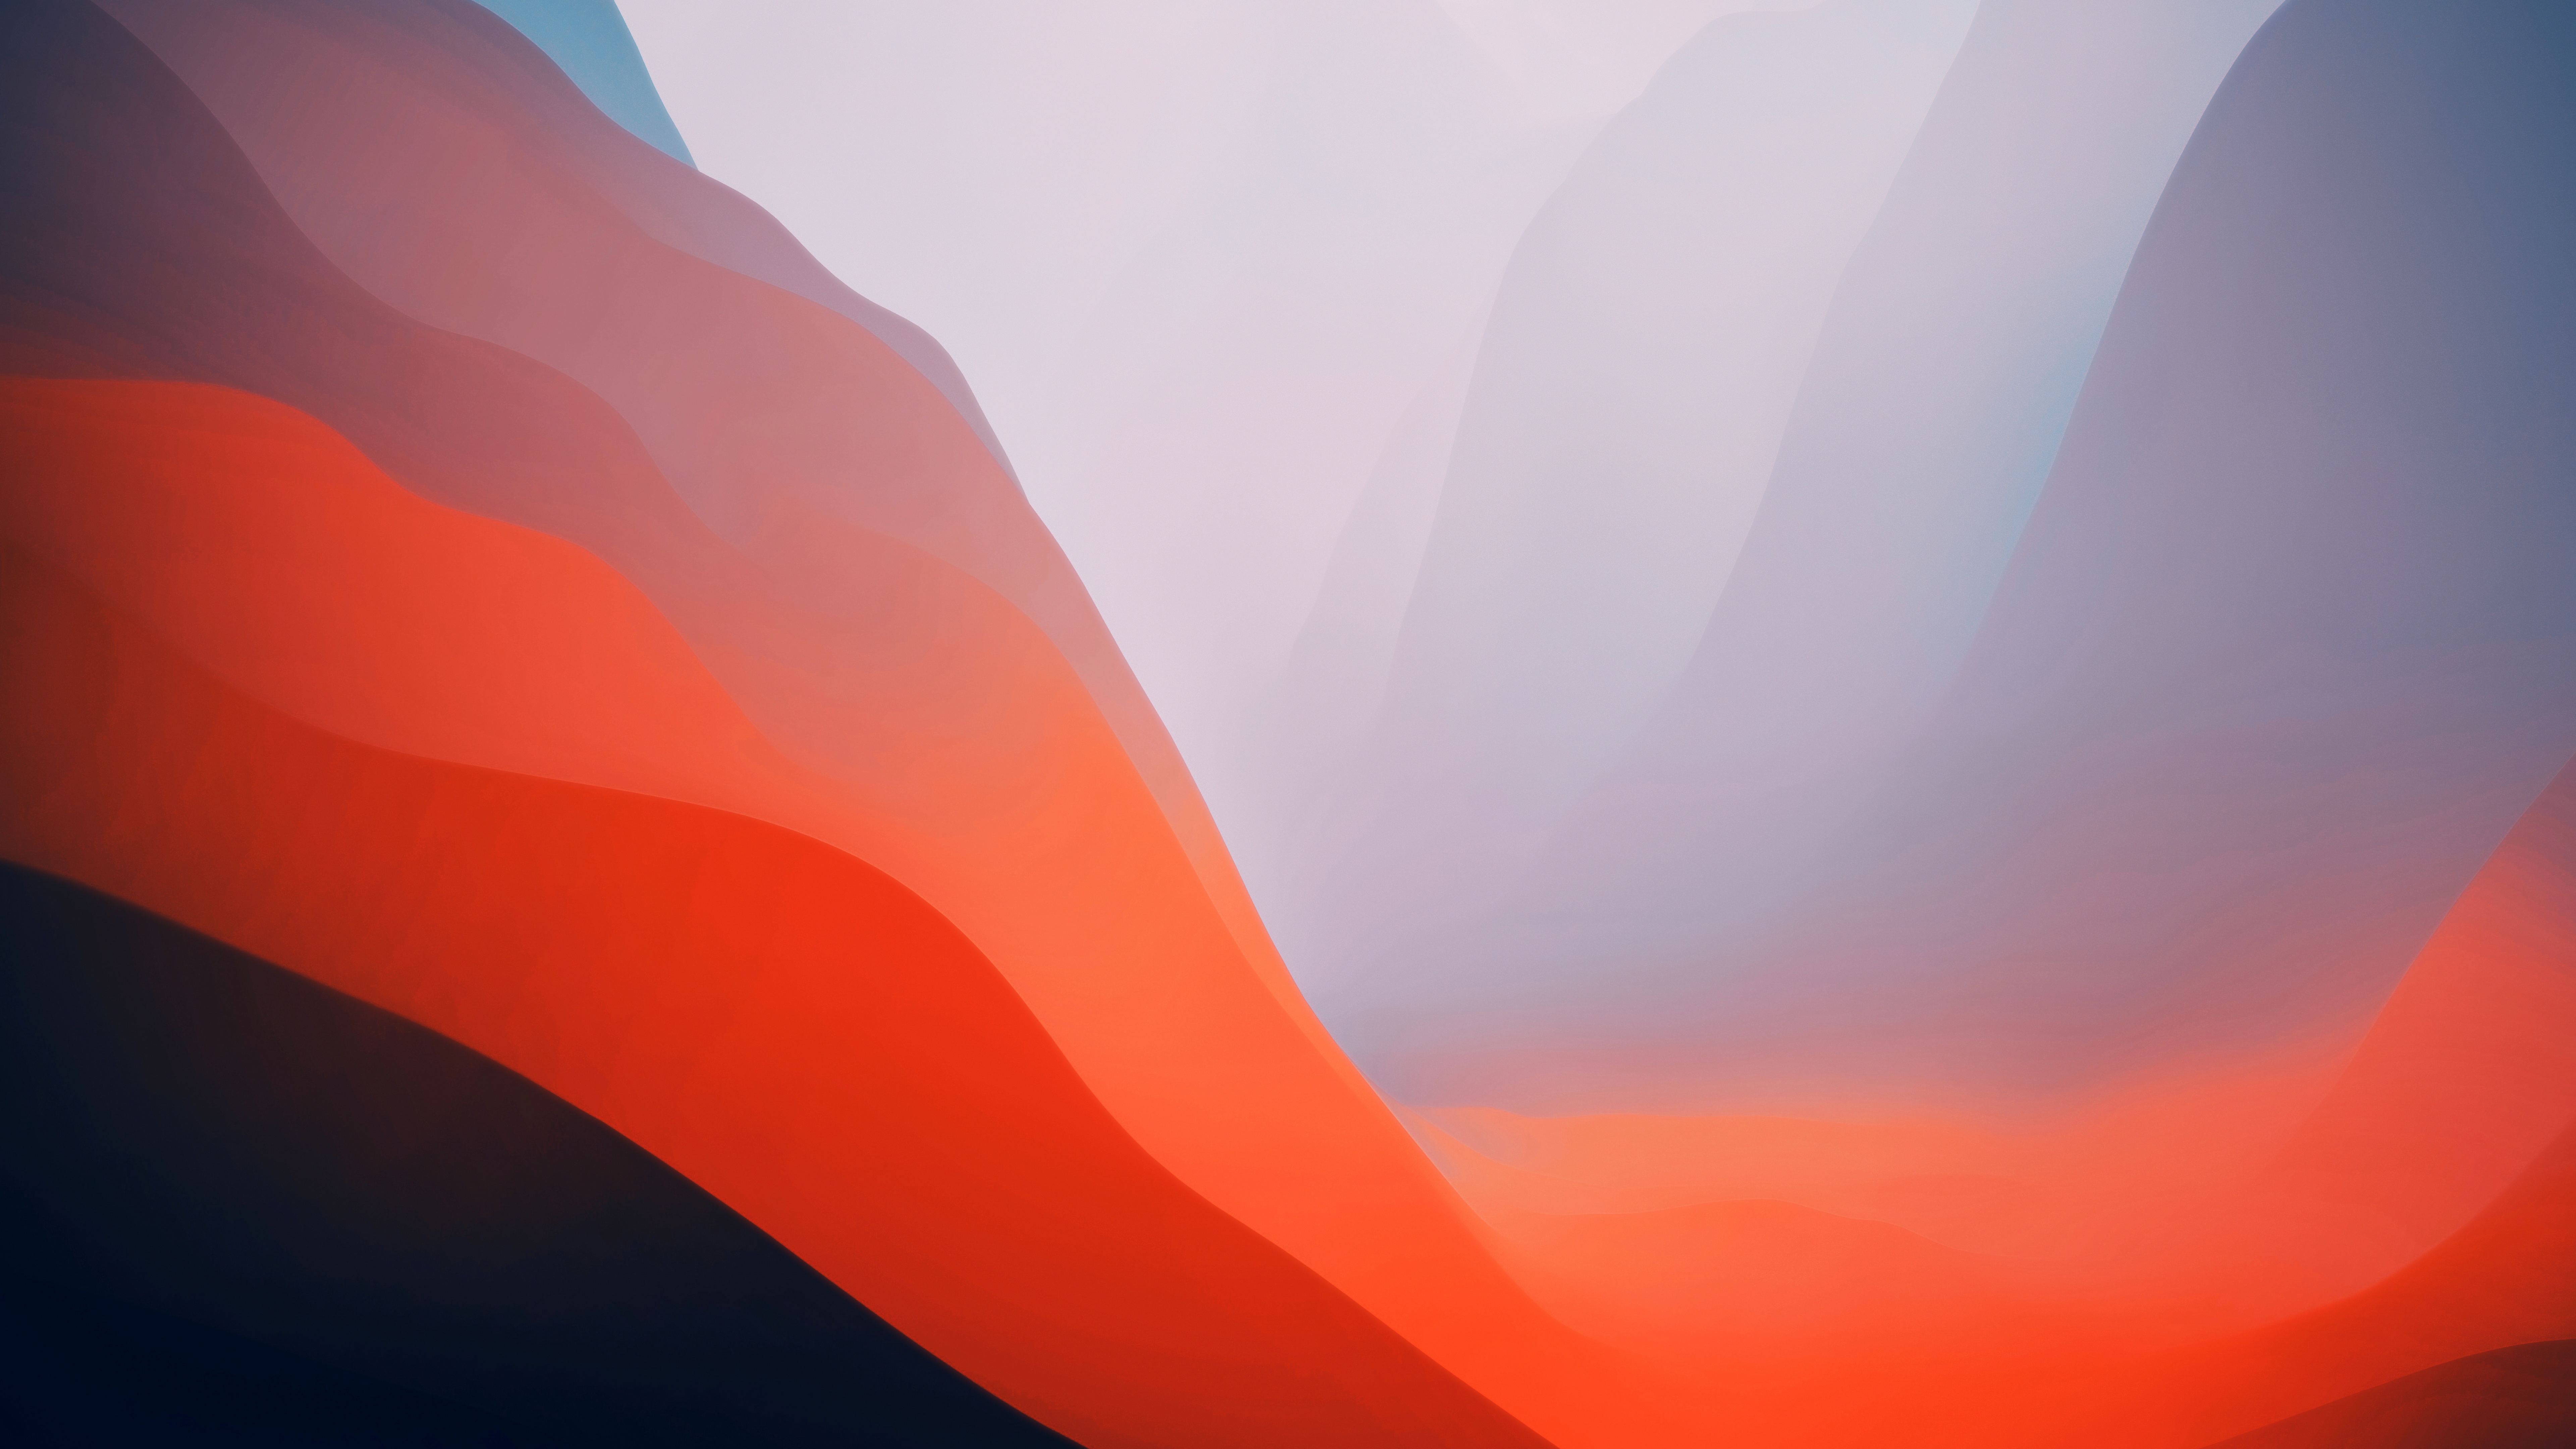 Tinh hoa công nghệ trong bộ sưu tập macOS Monterey Wallpaper 4K! Những hình nền đầy sáng tạo cùng chất lượng hình ảnh tuyệt đẹp sẽ mang lại cho bạn những trải nghiệm vô cùng tuyệt vời. Hãy tải về và làm mới cho thiết bị của bạn!